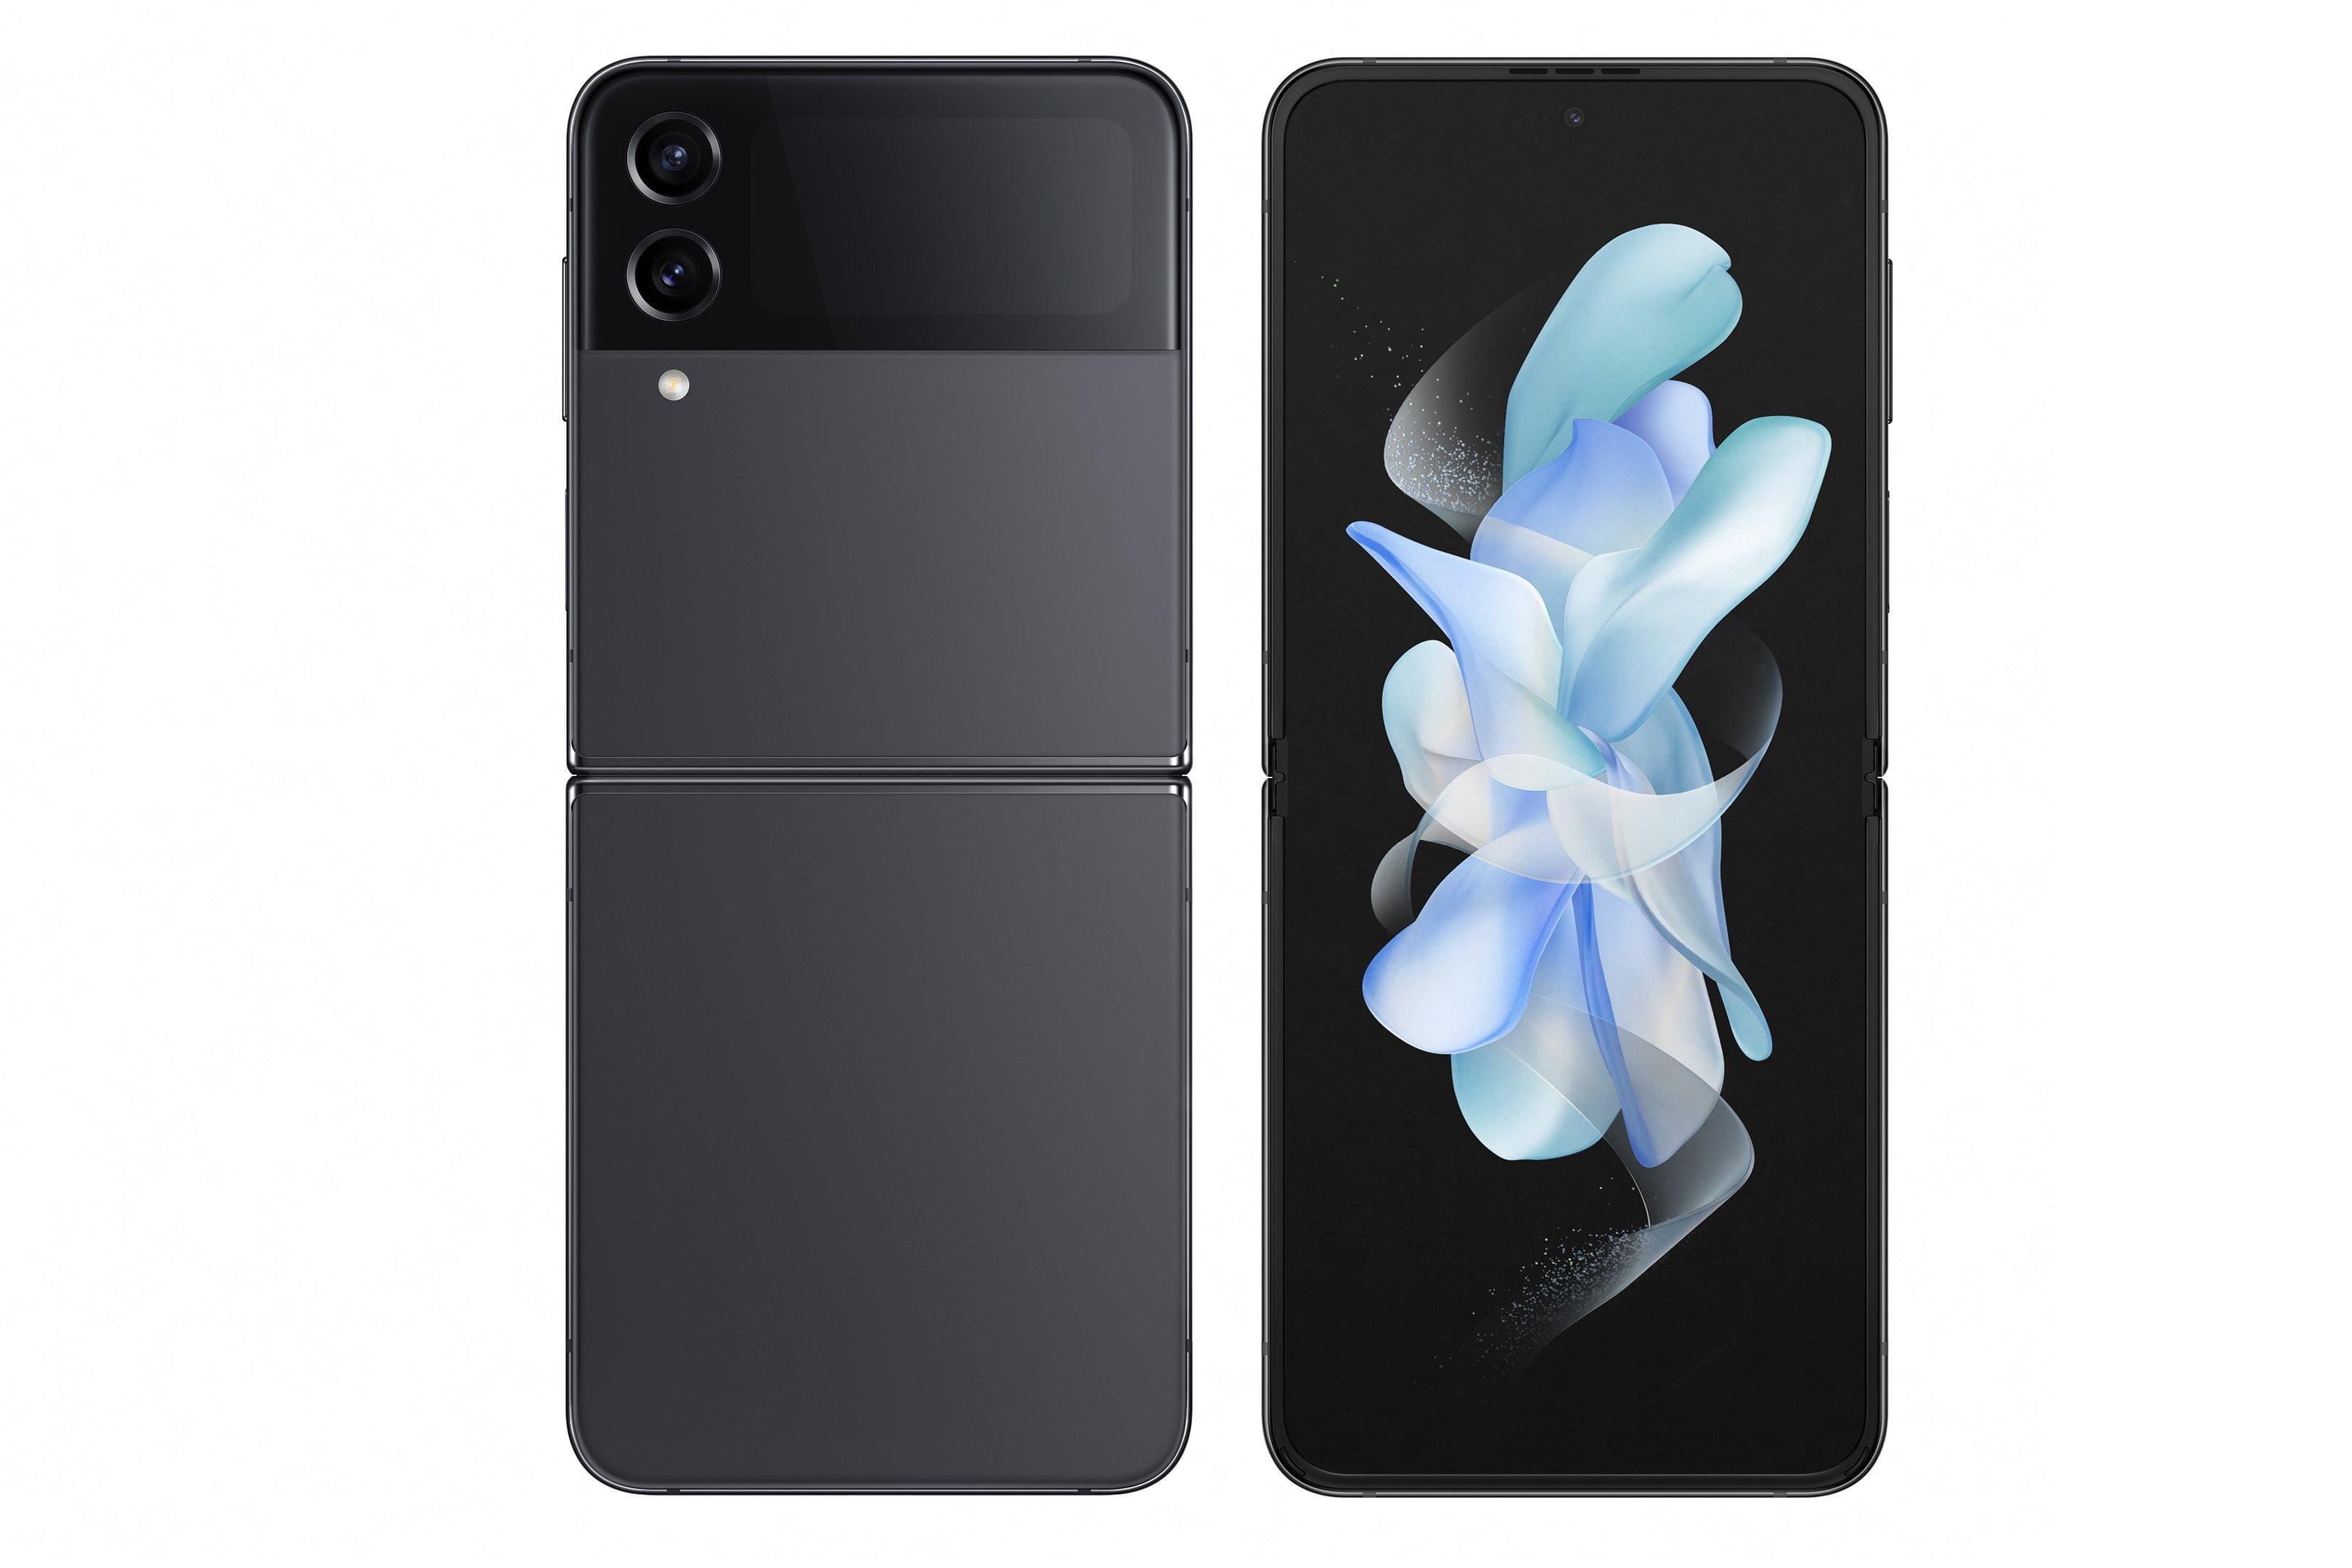 Samsung Galaxy A54 5G 256GB - Awesome Black – Nutronics